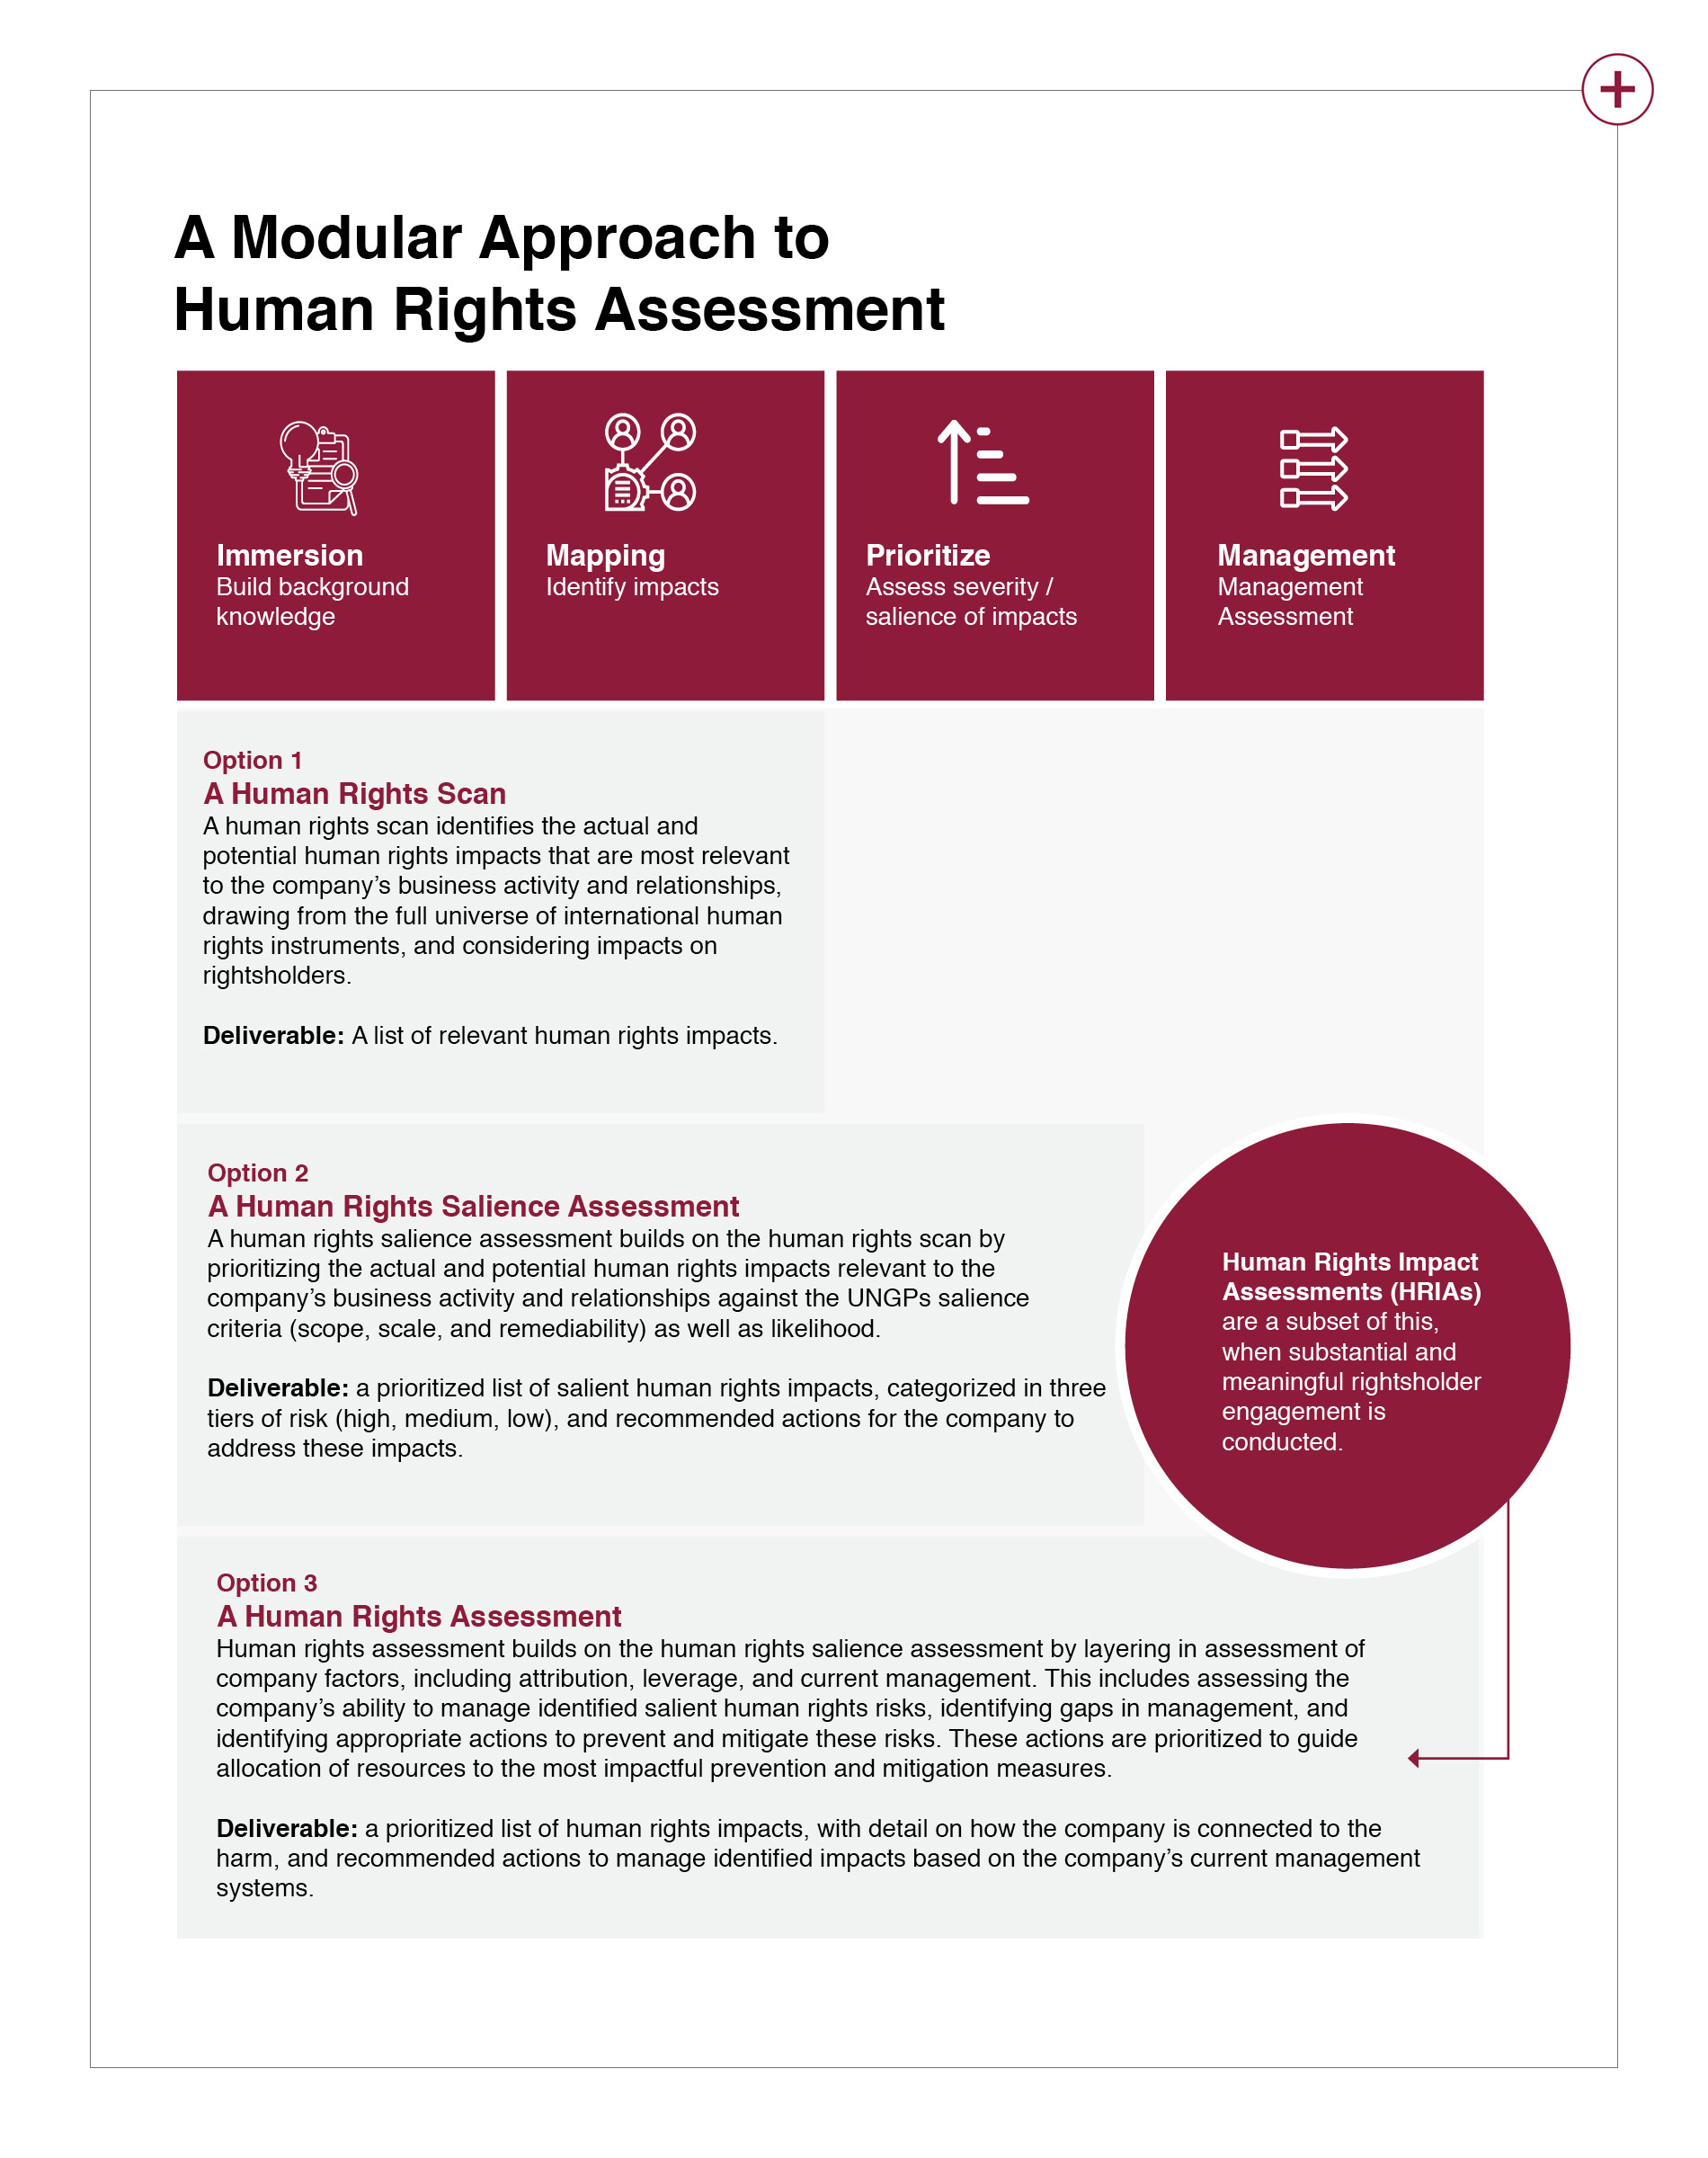 A Modular Approach to Human Rights Assessment sheet